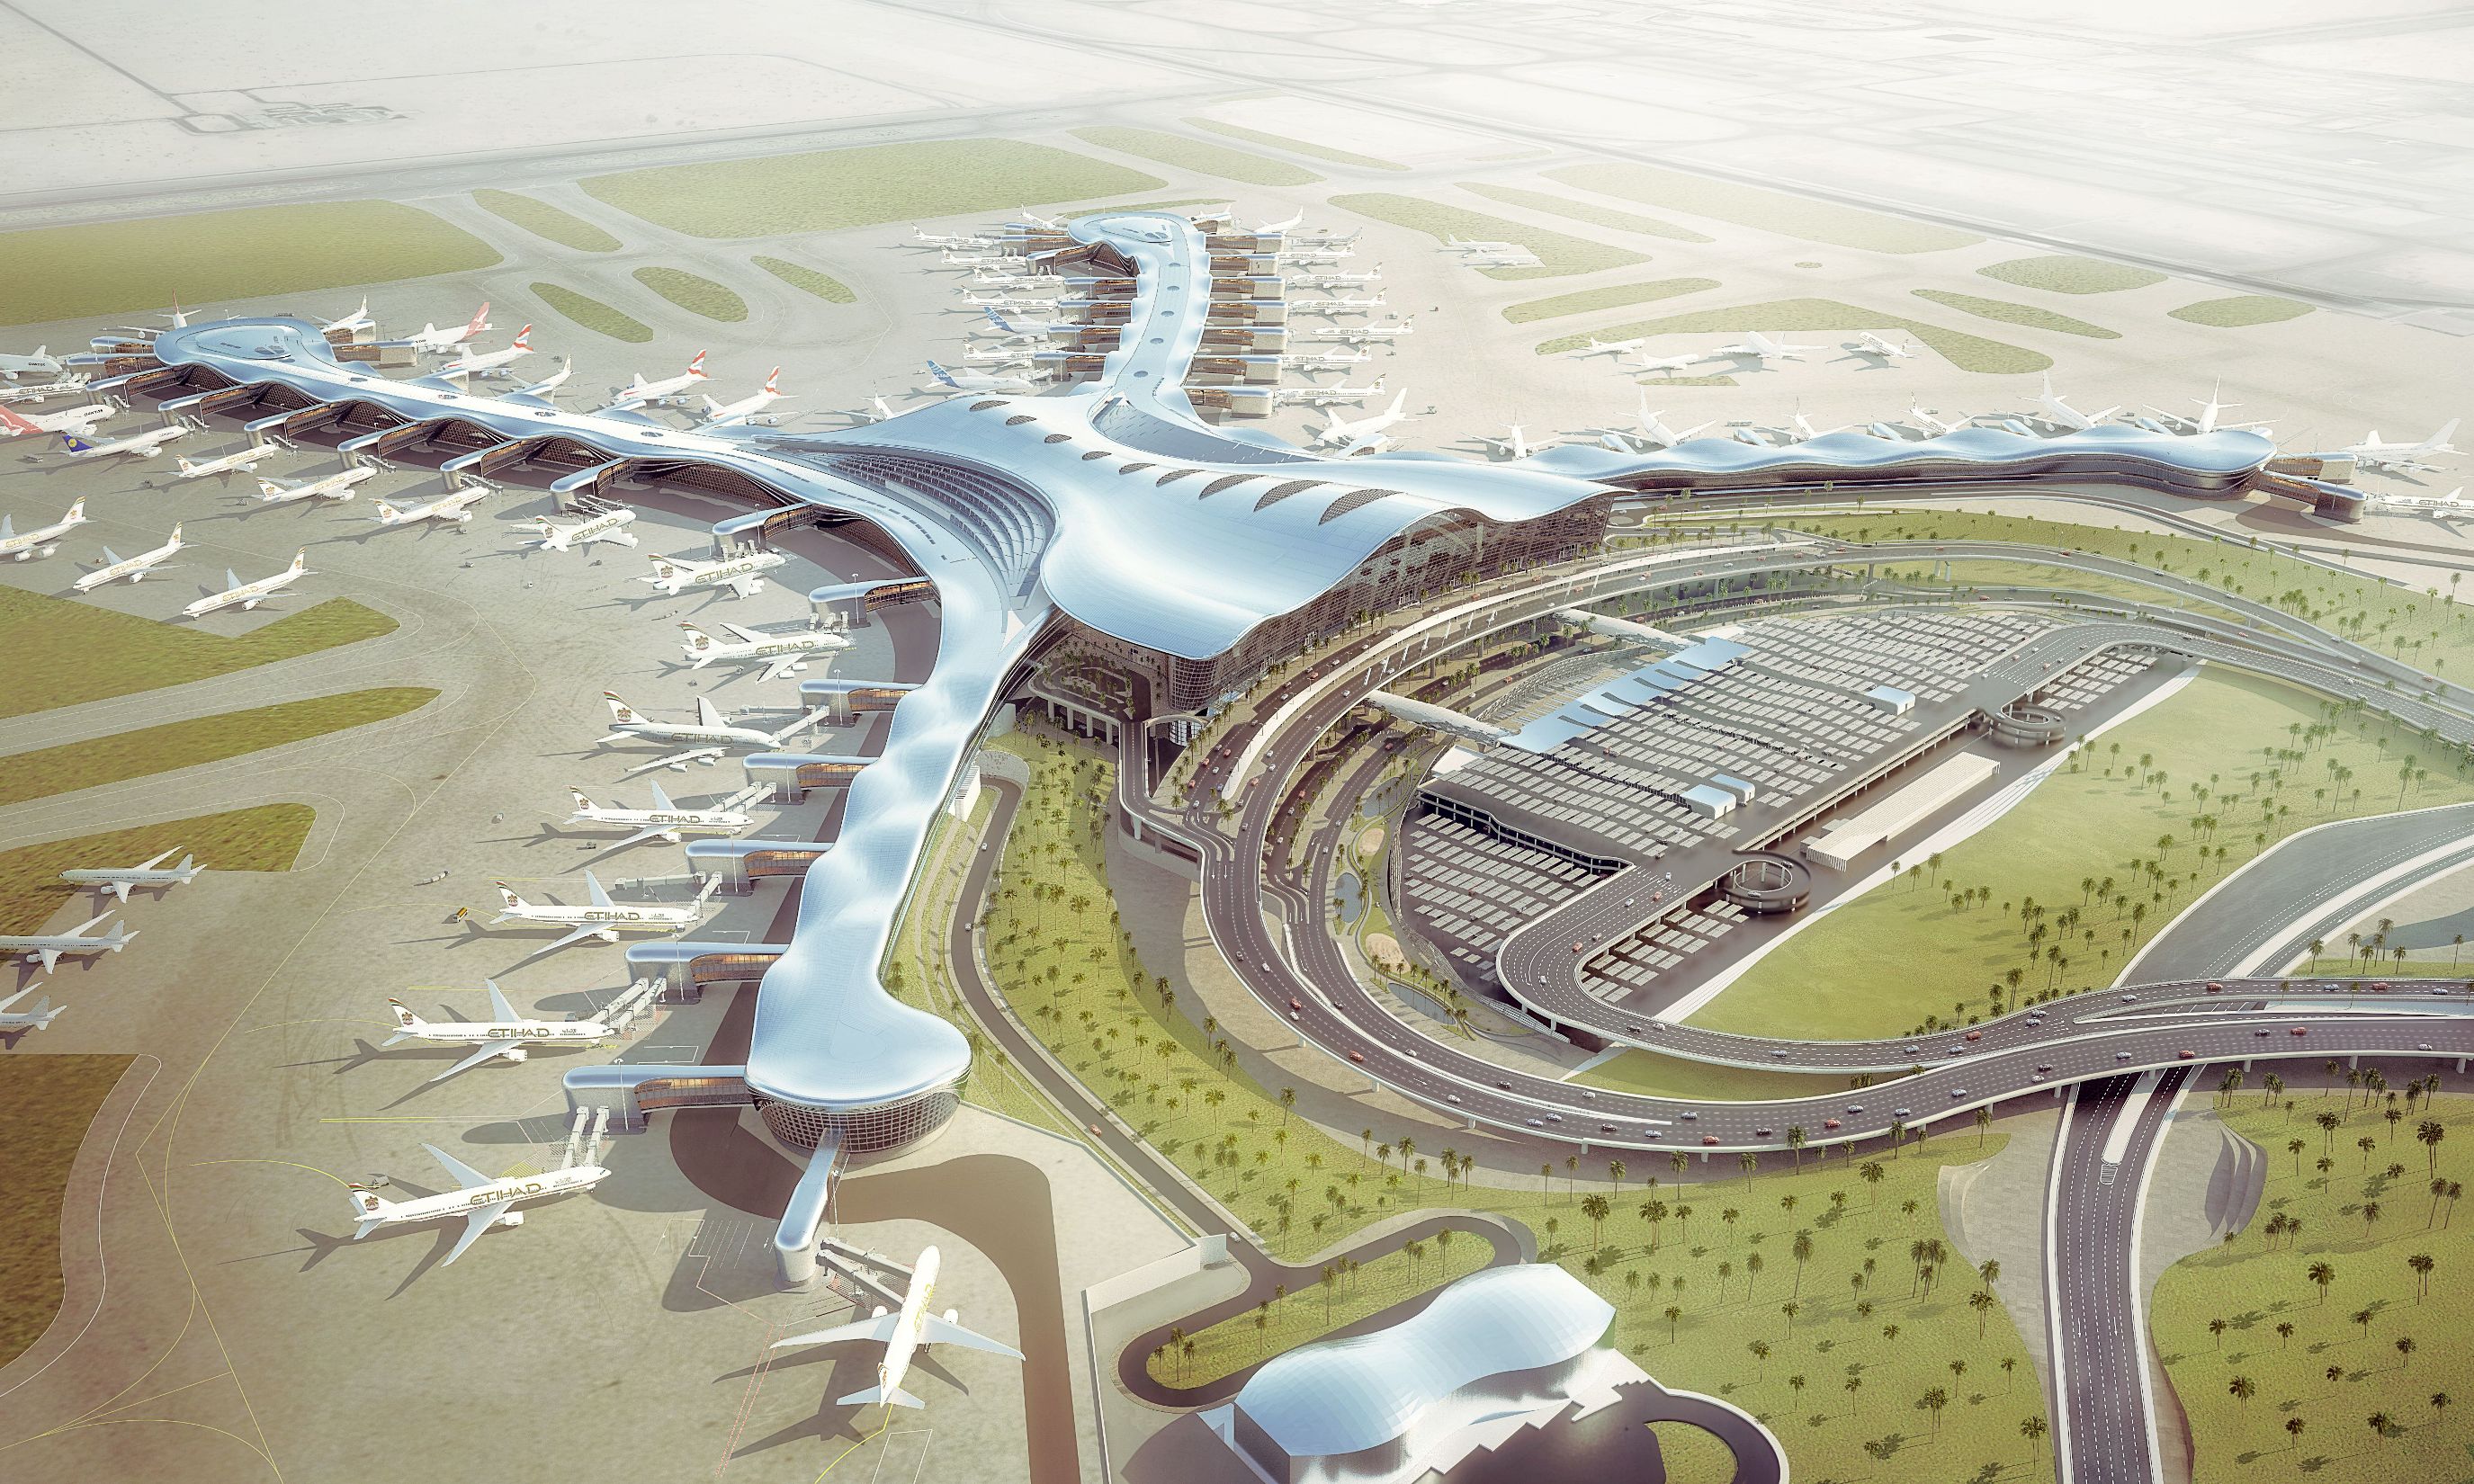 Abu Dabi Havalimanı’nın Yeni Terminalinde “Gümrük Ön İşlem” Uygulaması Olacak mı?